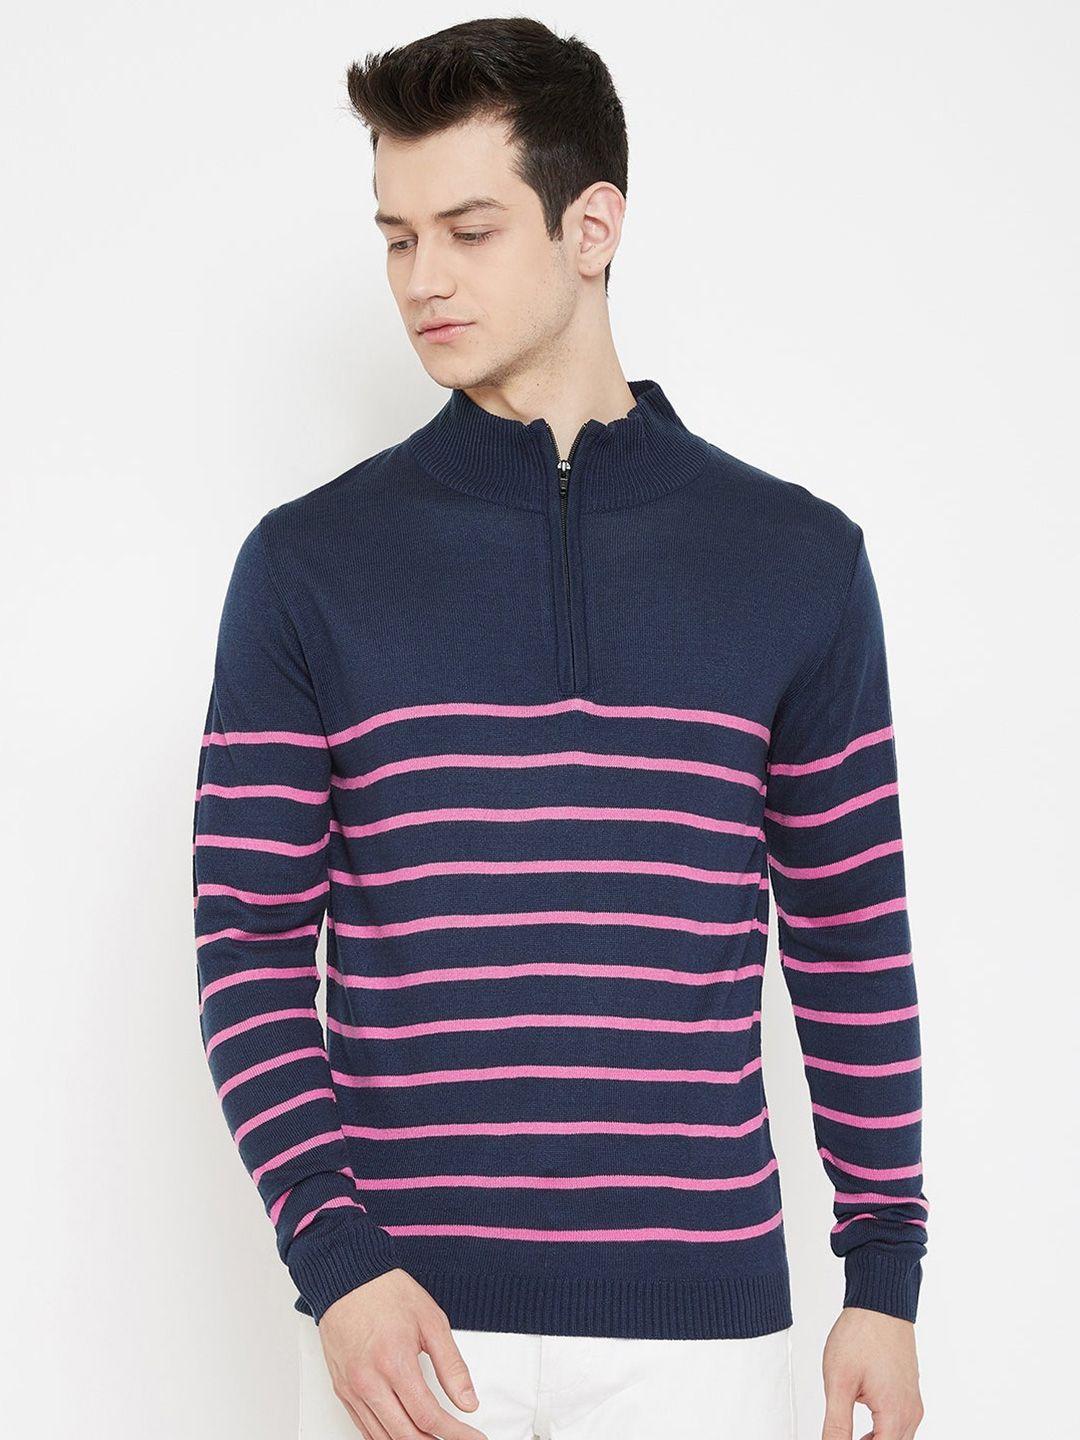 jump usa men navy blue & pink striped sweater